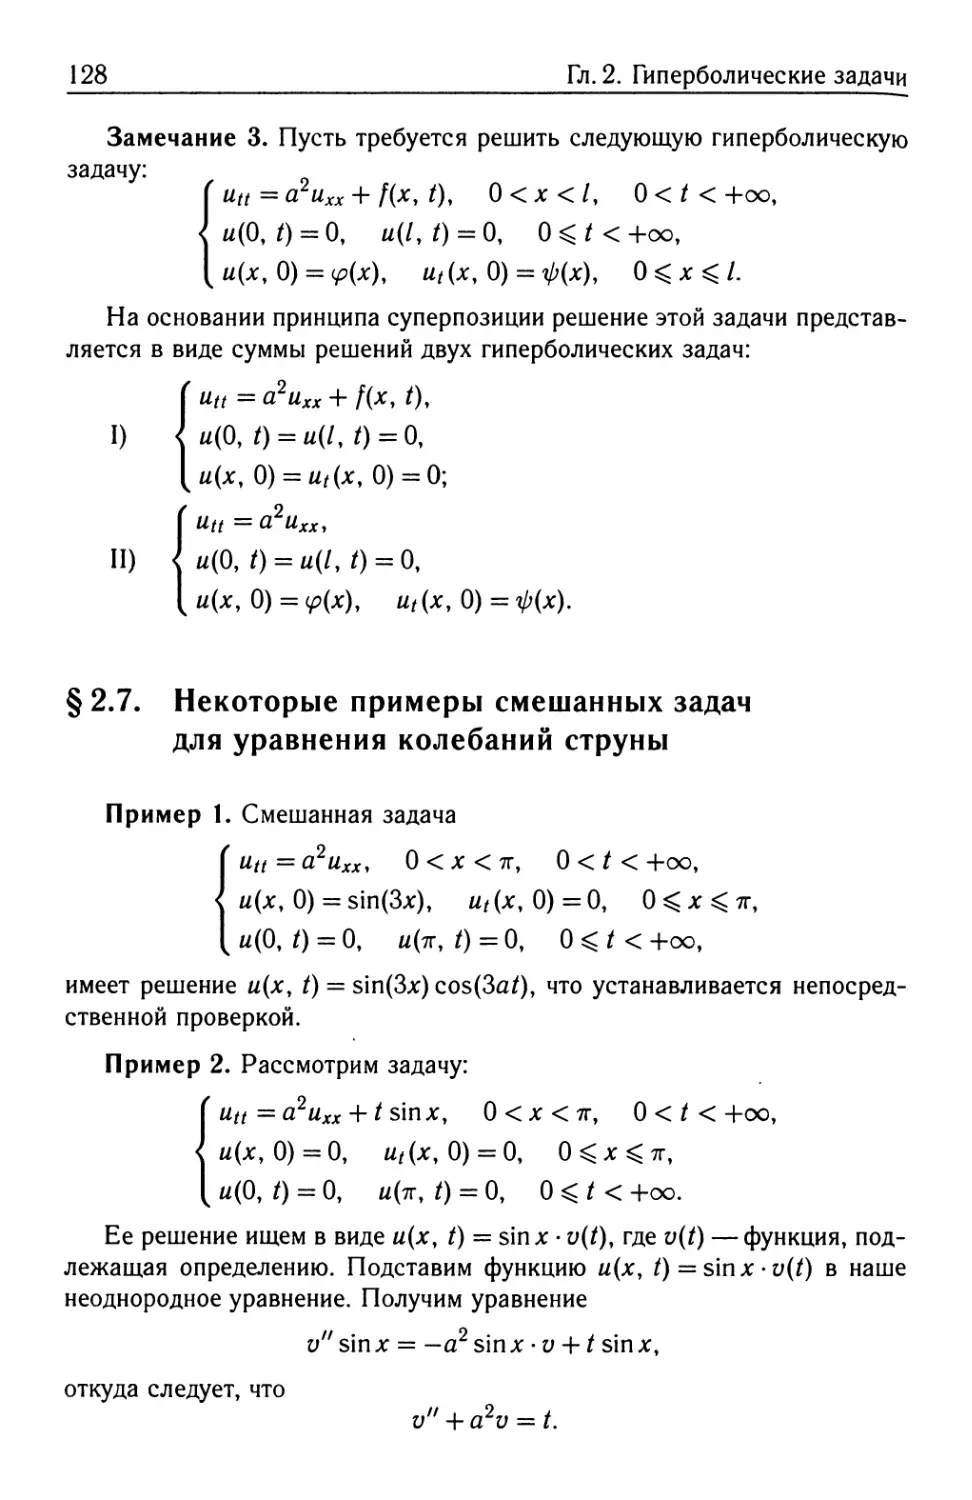 § 2.7. Некоторые примеры смешанных задач для уравнения колебаний струны